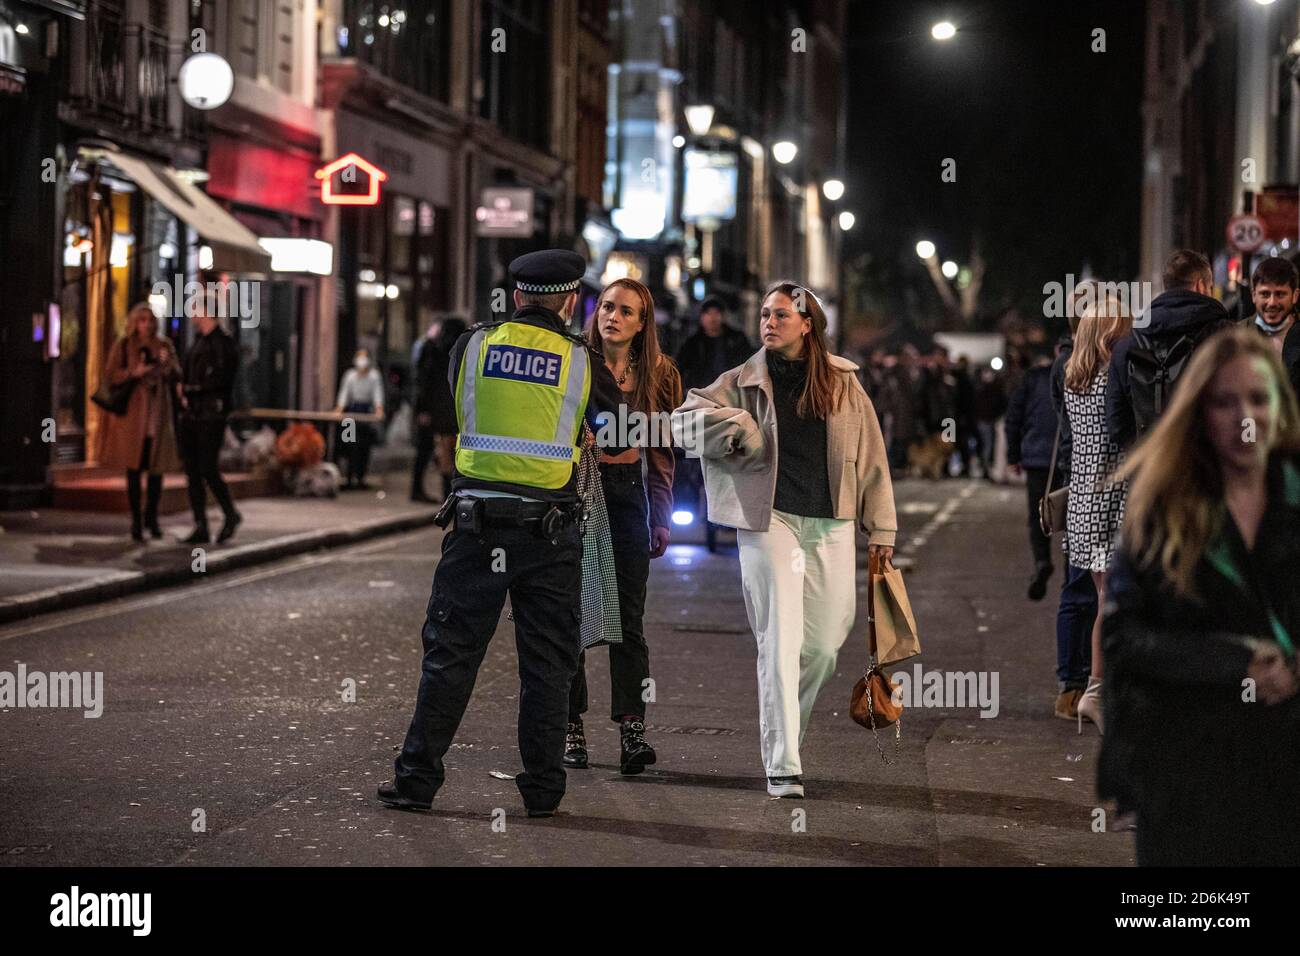 Ein paar junge Frauen werden von der Polizei abgewiesen, die auf der Old Compton Street patrouilliert, während das, was als die letzte Nacht der Freiheit als Stufe 2-Lockdown gilt, auf Versammlungen in Restaurants und Bars in Soho, London, Großbritannien erzwungen wird.Quelle: Jeff Gilbert/Alamy Live News Stockfoto